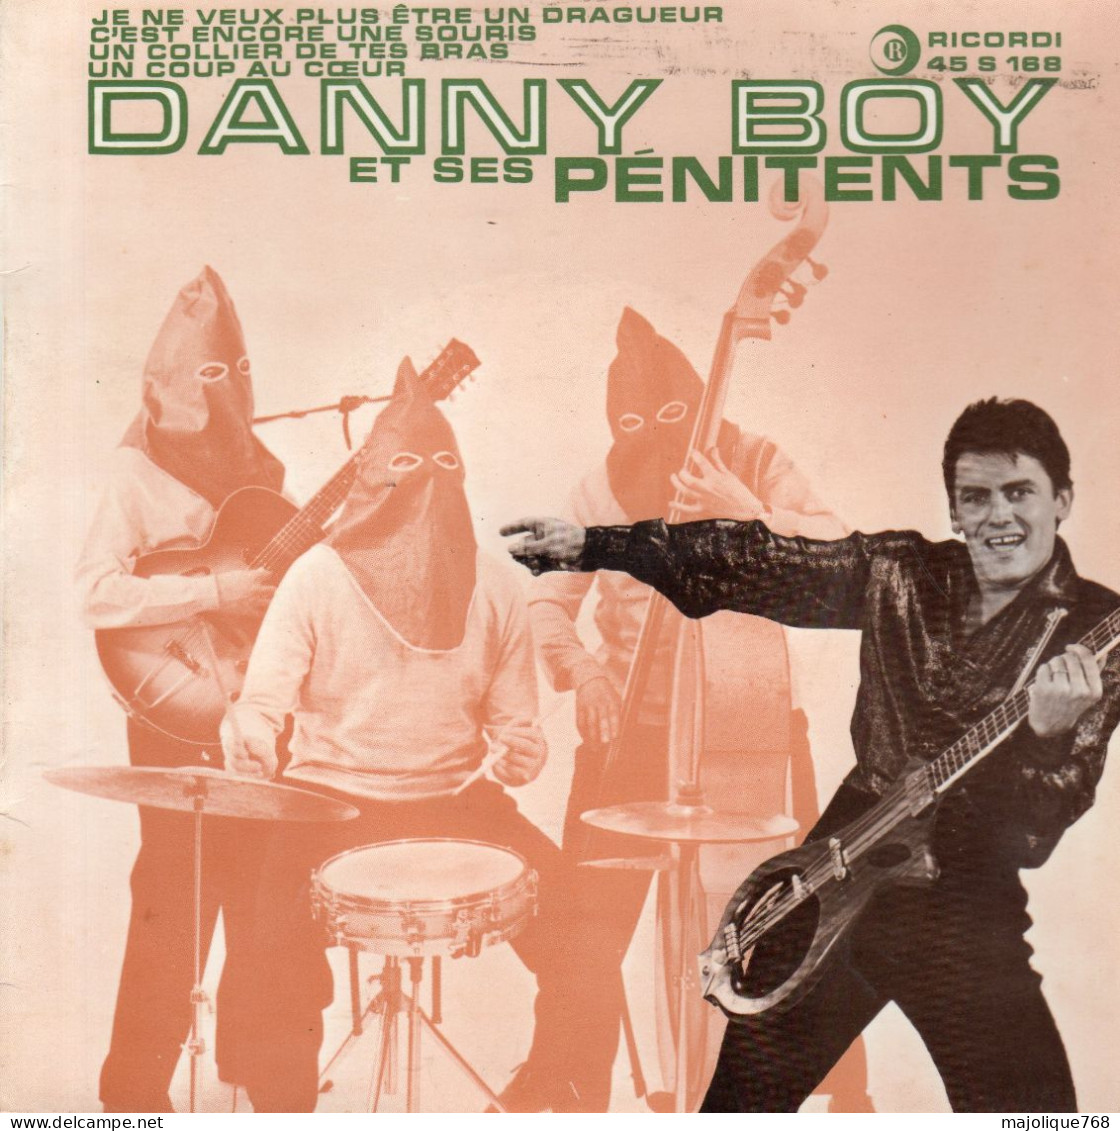 Disque - Danny Boy Et Ses Pénitents - Je Ne Veux Plus être Un Dragueur - Ricordi 45 S 168 France 1961 - Rock